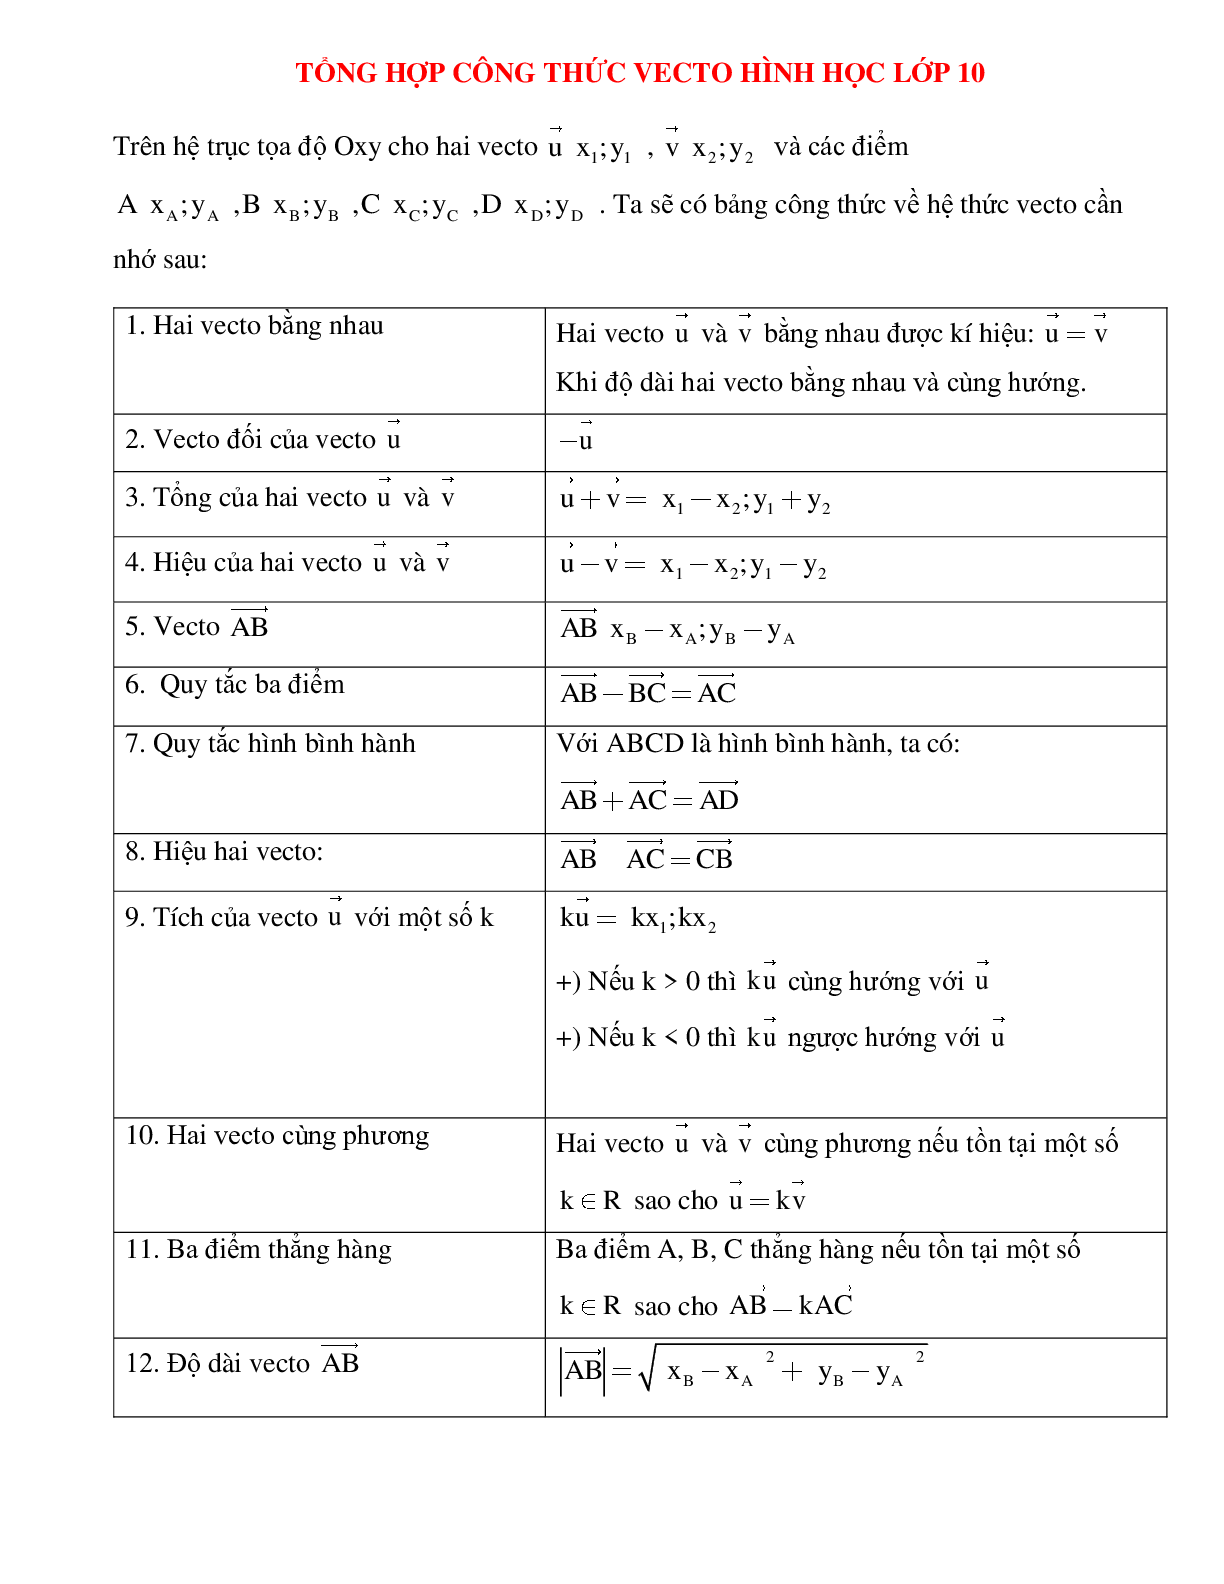 Tổng phù hợp công thức vecto hình học tập lớp 10 (trang 1)